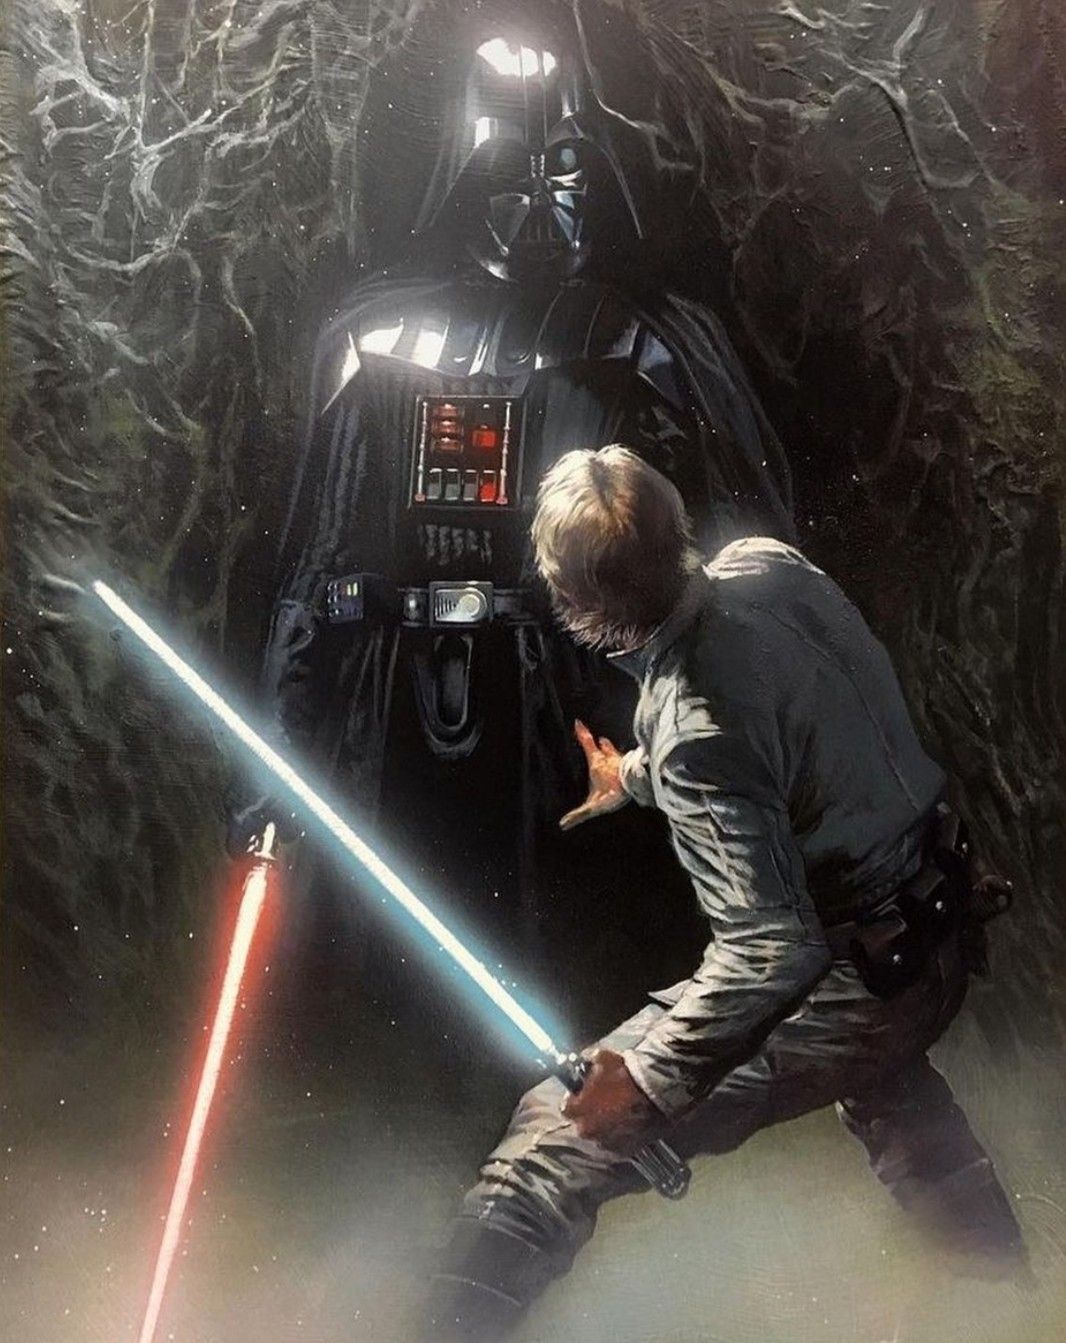 Luke Skywalker Vs Darth Vader In Degobah. Star wars, Star wars wallpaper, Darth vader